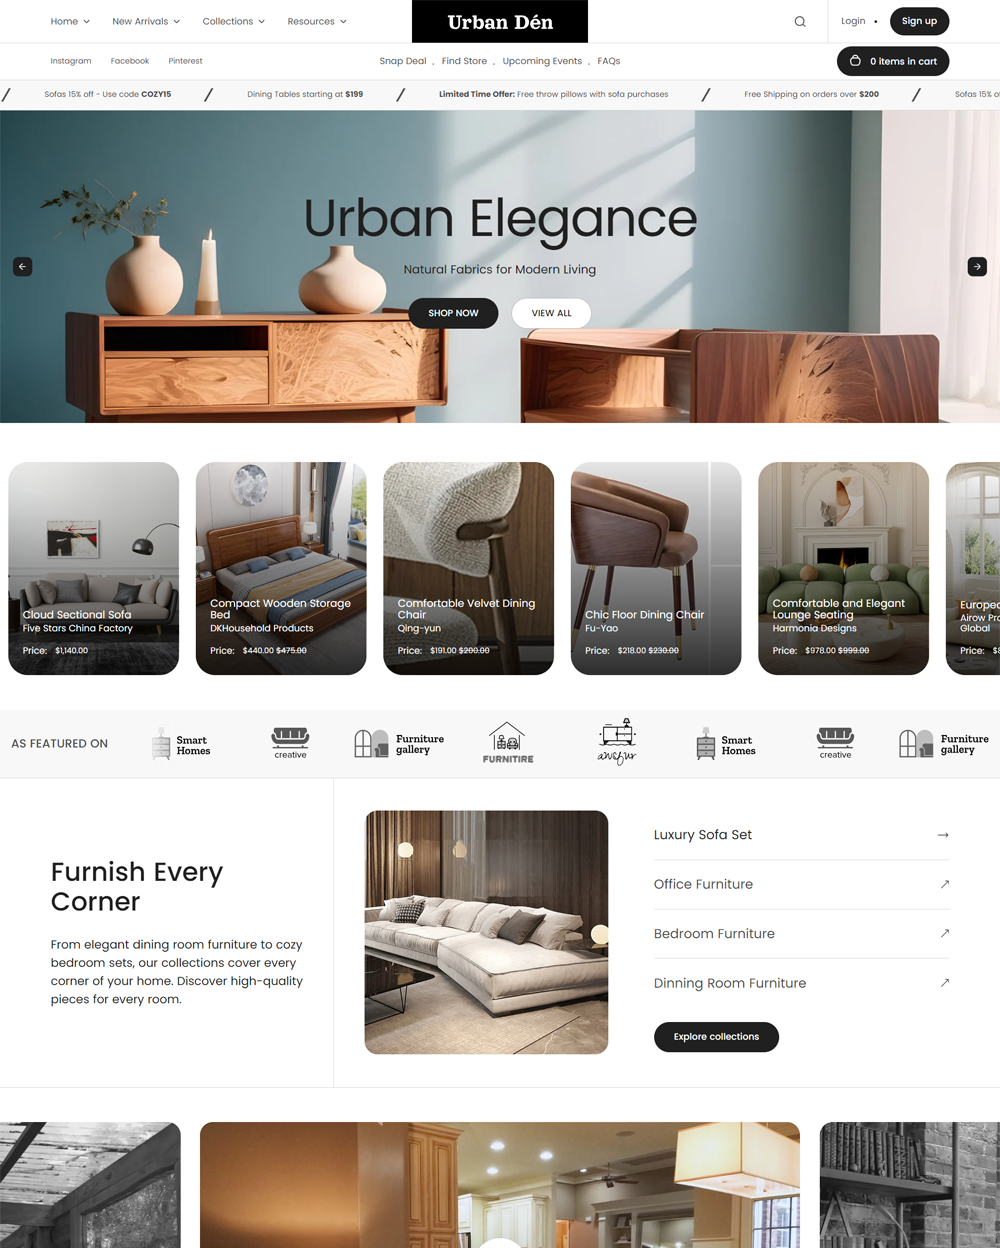 Anteprima in versione desktop del tema Urban nello stile “Furniture”